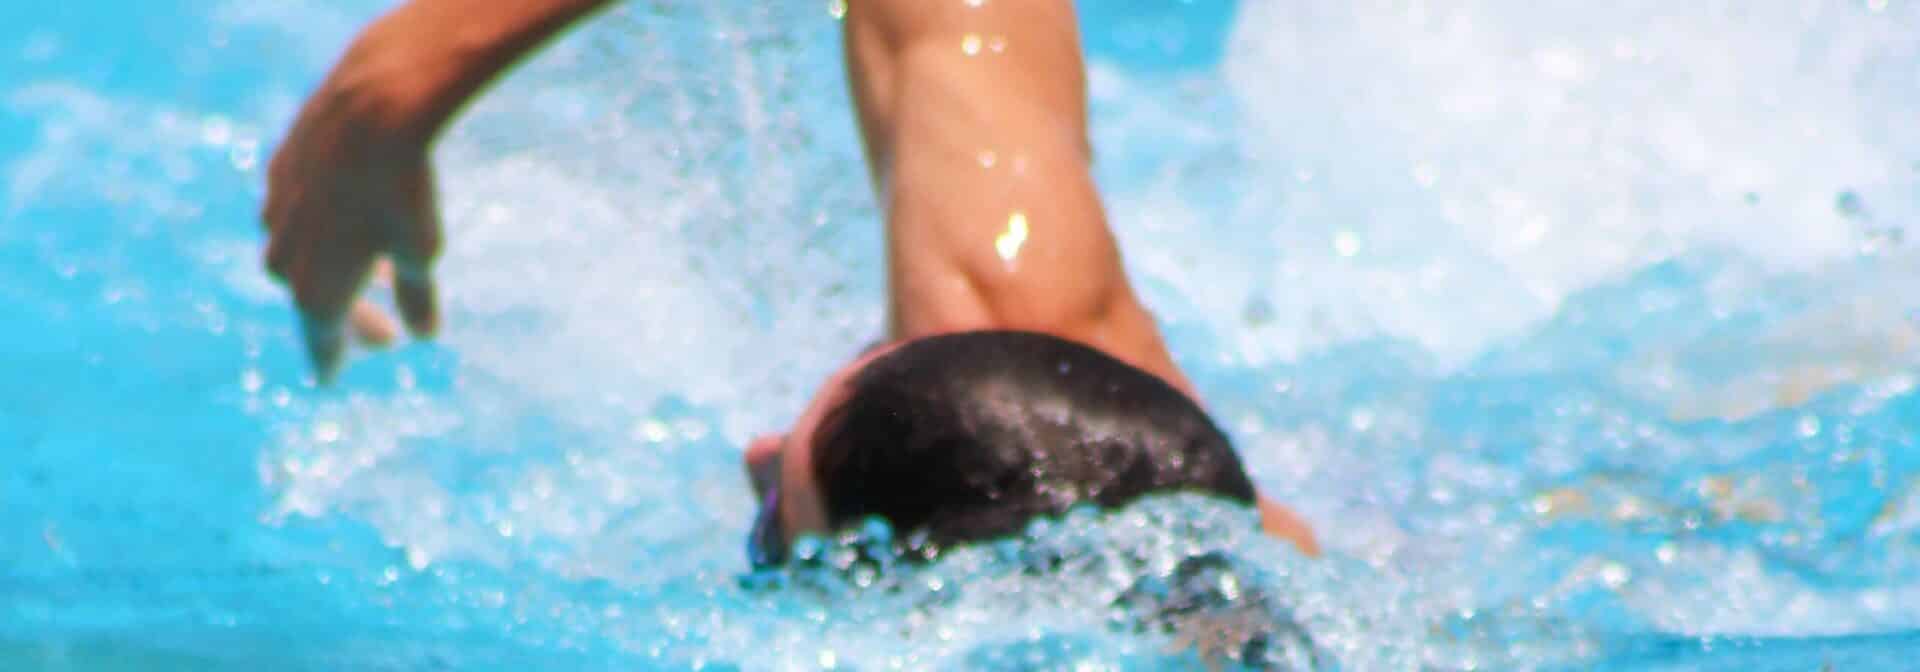 lesiones comunes en natación